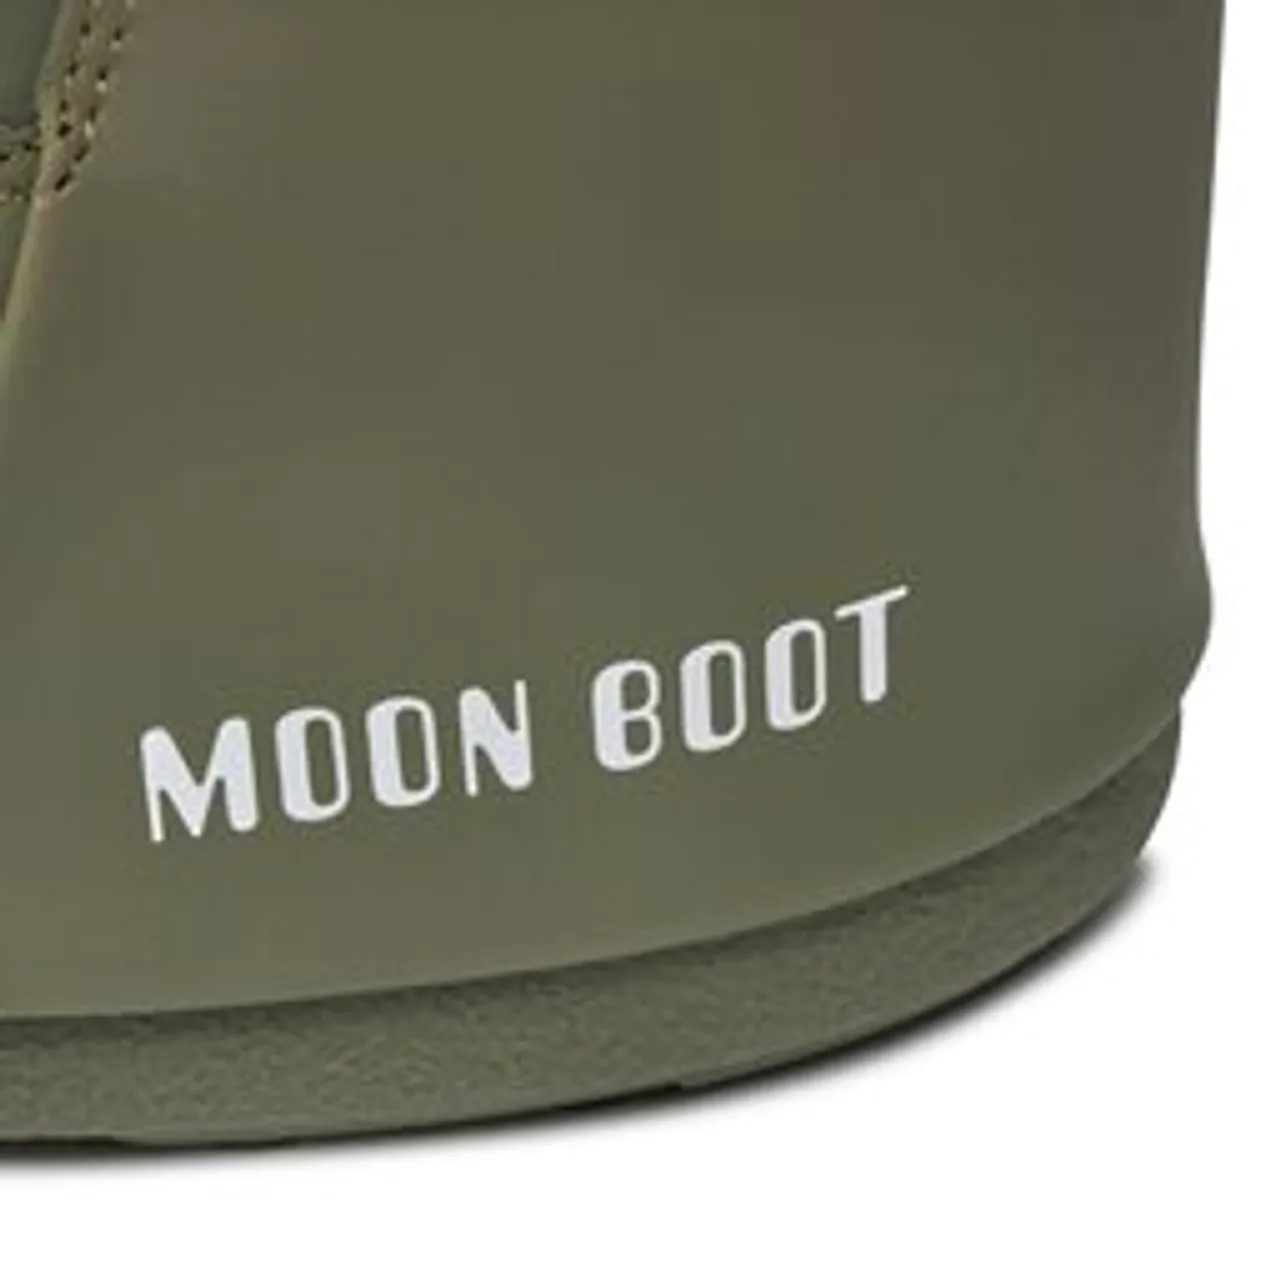 Schneeschuhe Moon Boot Low Nolace Rubber 14094100002 Khaki 002